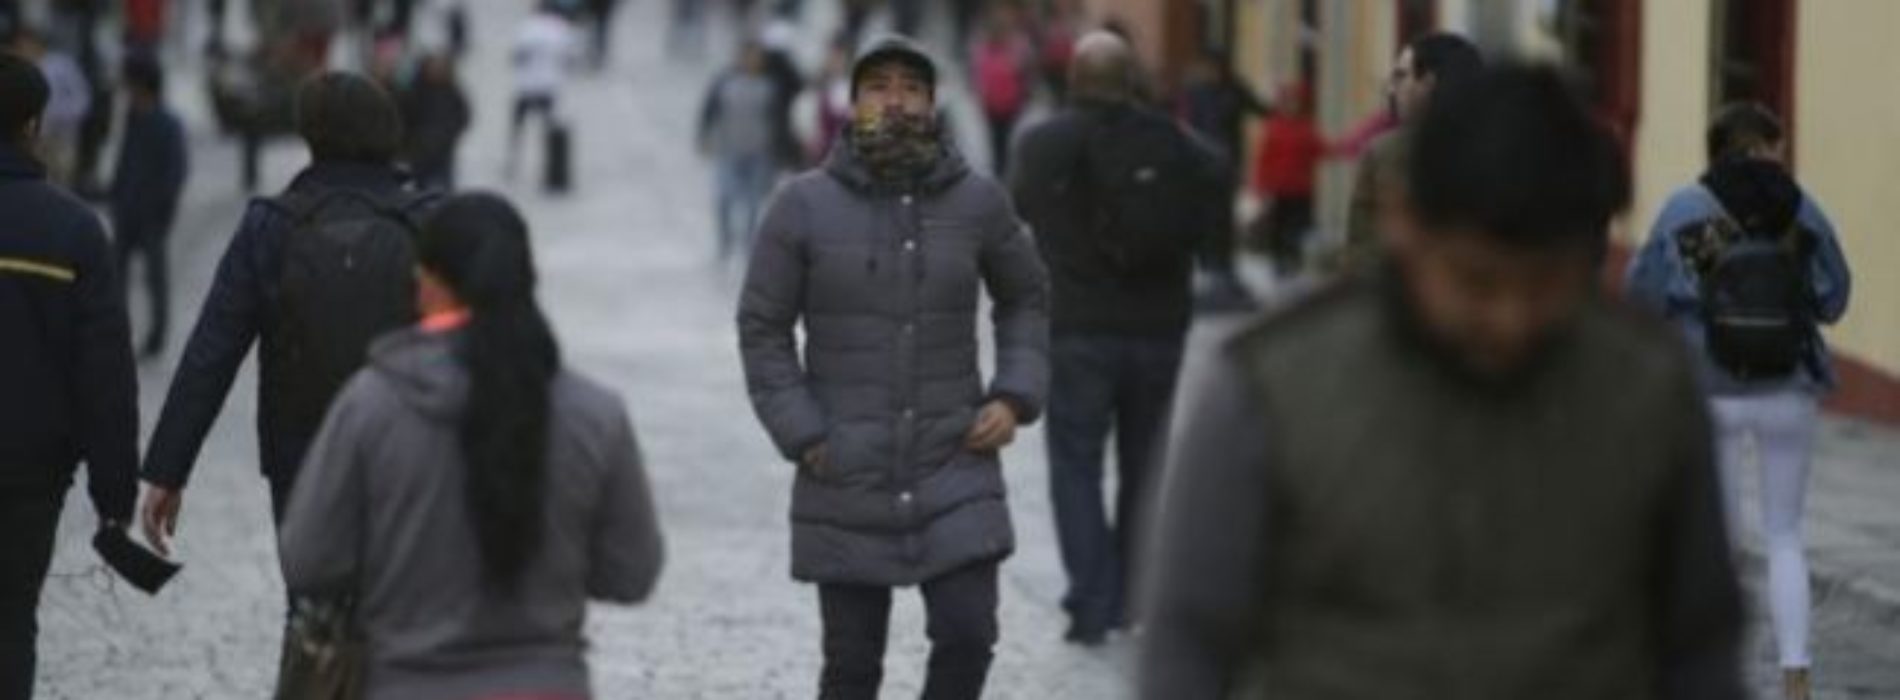 Prepara tu abrigo: hará frío en casi todo el país la próxima
semana